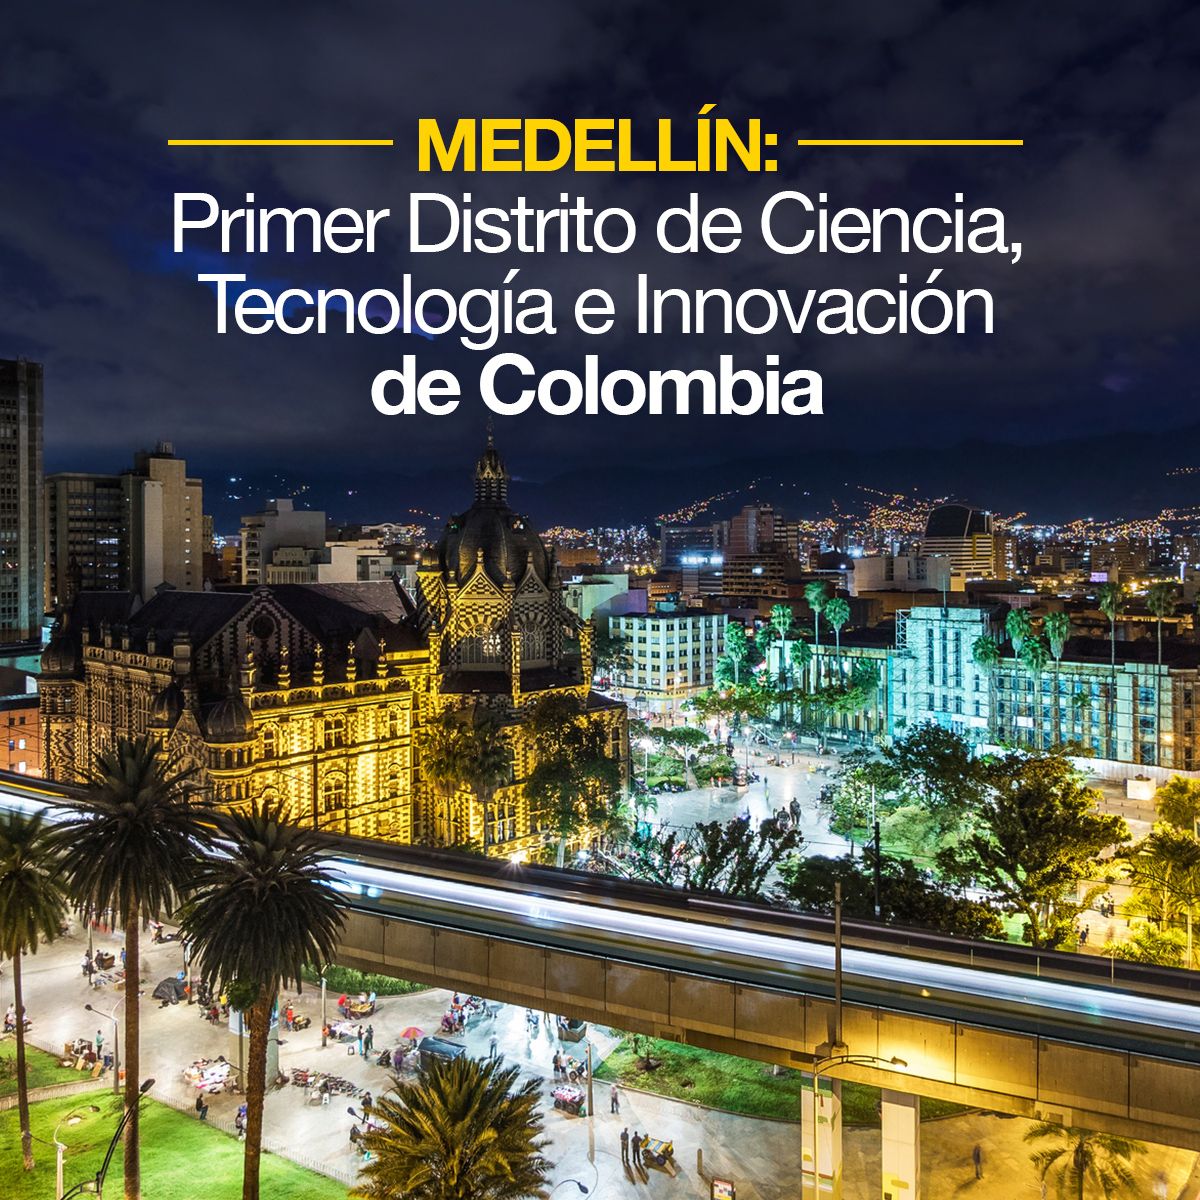 Medellín: Primer Distrito de Tecnología de Colombia